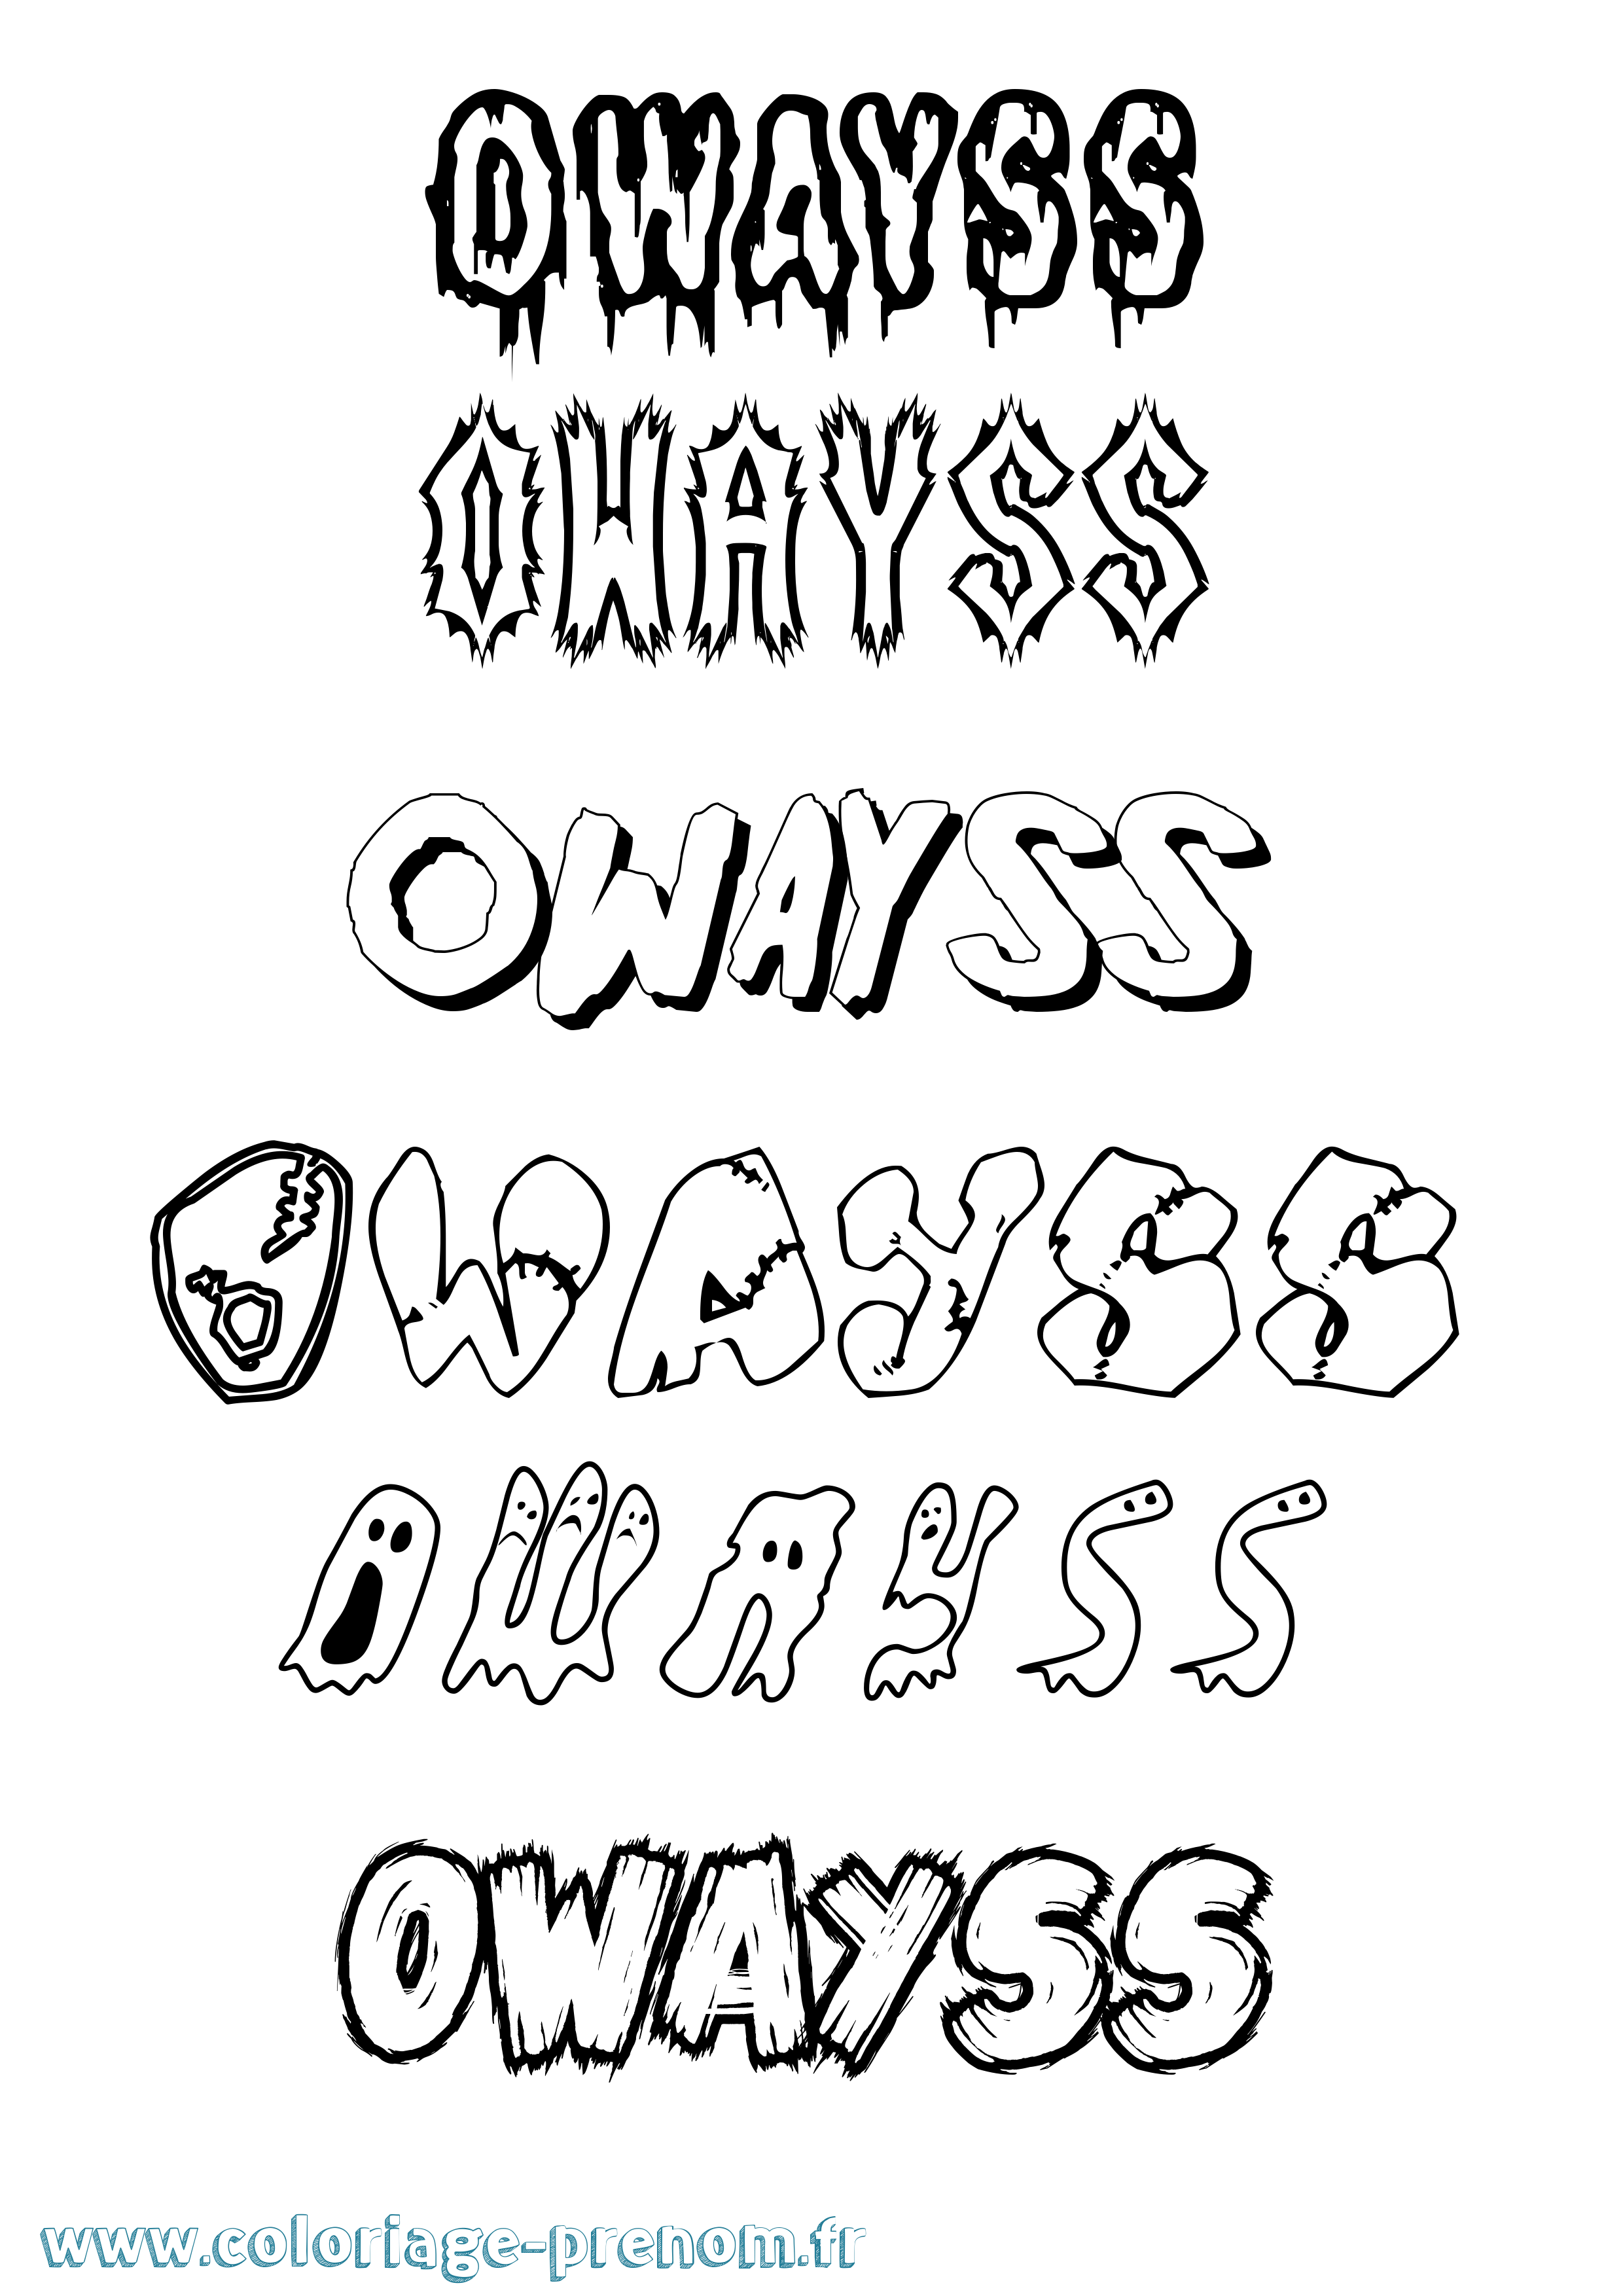 Coloriage prénom Owayss Frisson